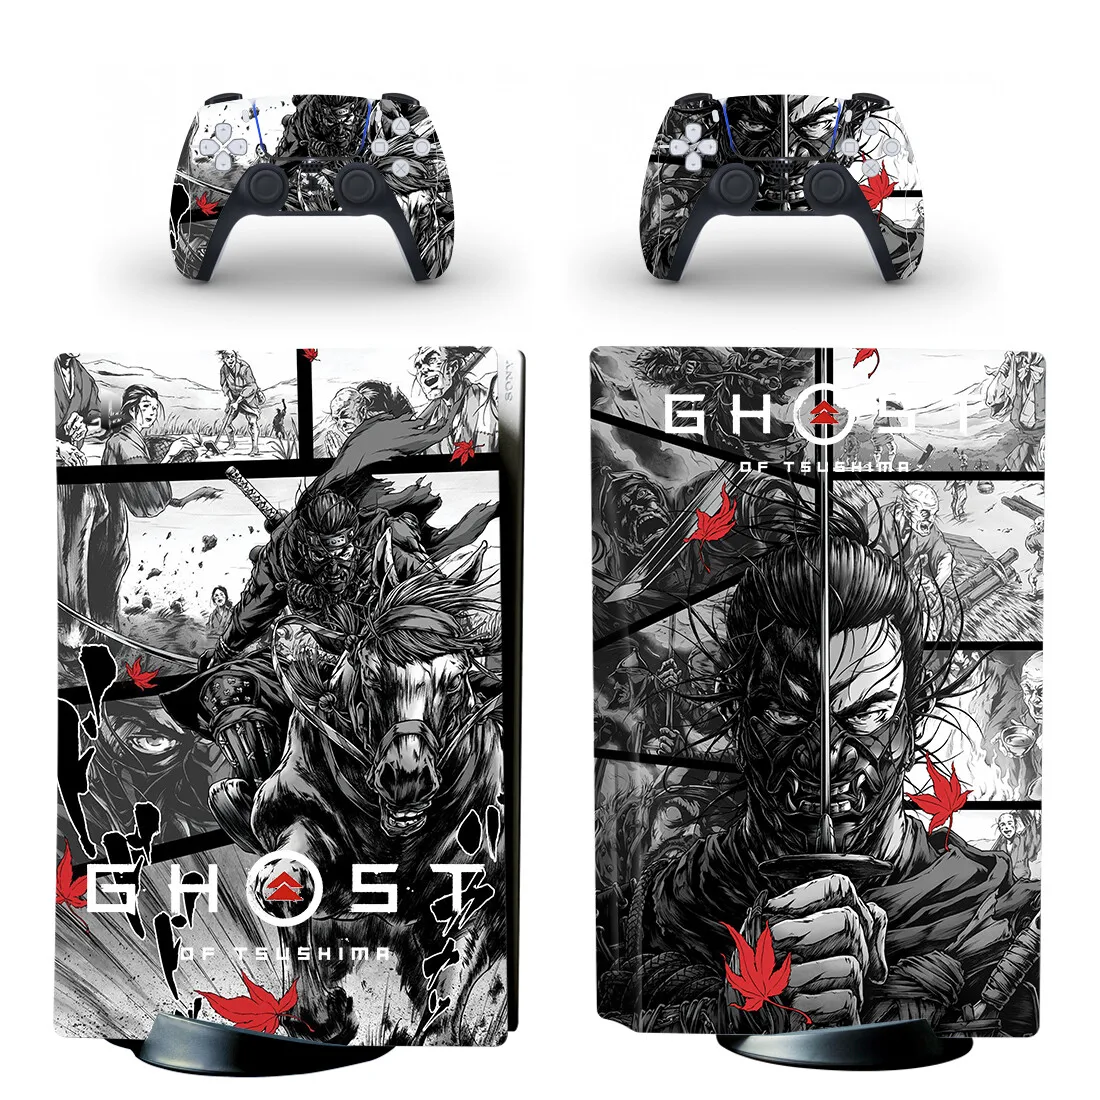 

Наклейка в стиле призрака PS5 Disc Edition для консоли Playstation 5 и 2 контроллера, стильная наклейка